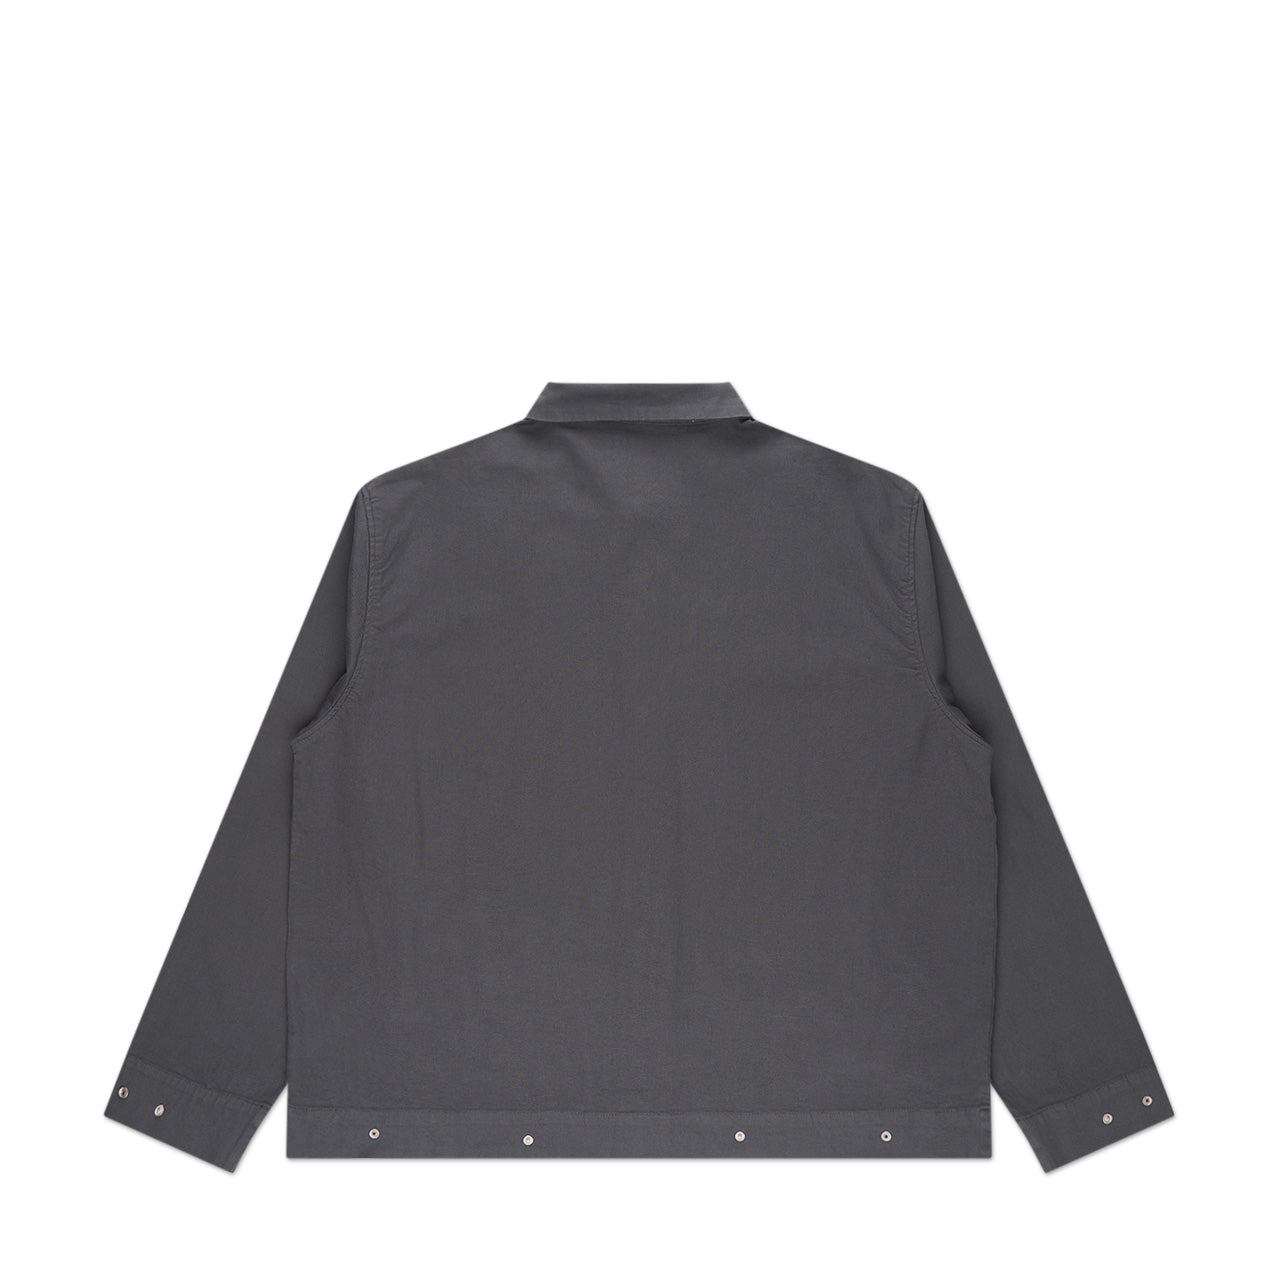 affxwrks wrks jacket (grey)